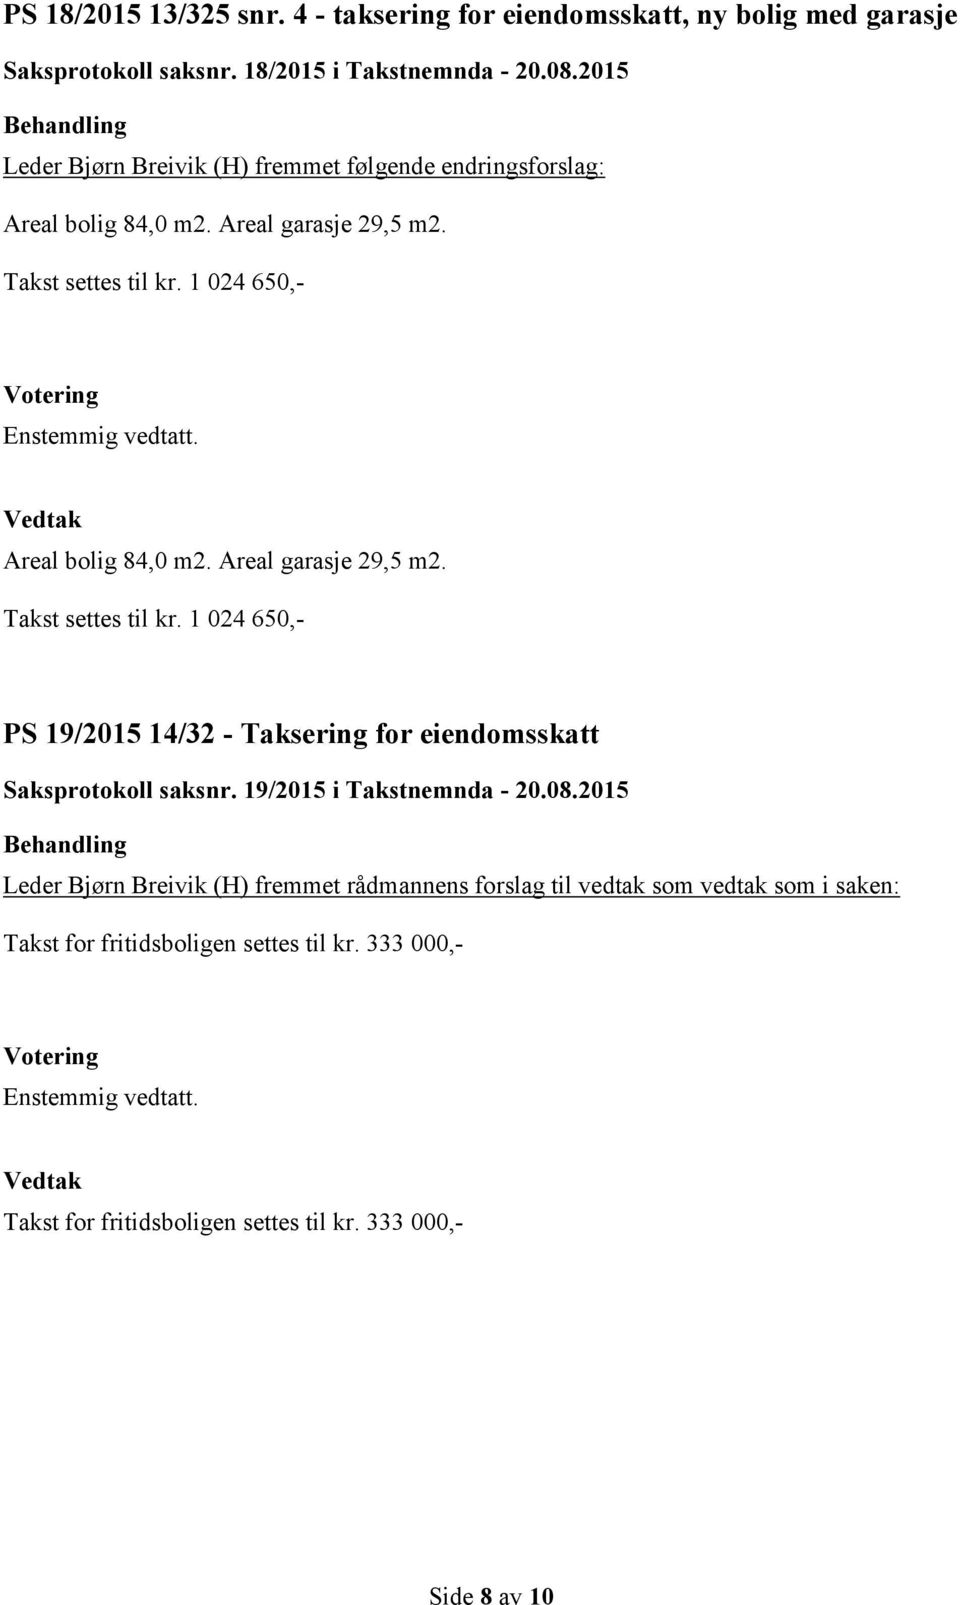 2015 Leder Bjørn Breivik (H) fremmet følgende endringsforslag: PS 19/2015 14/32 - Taksering for